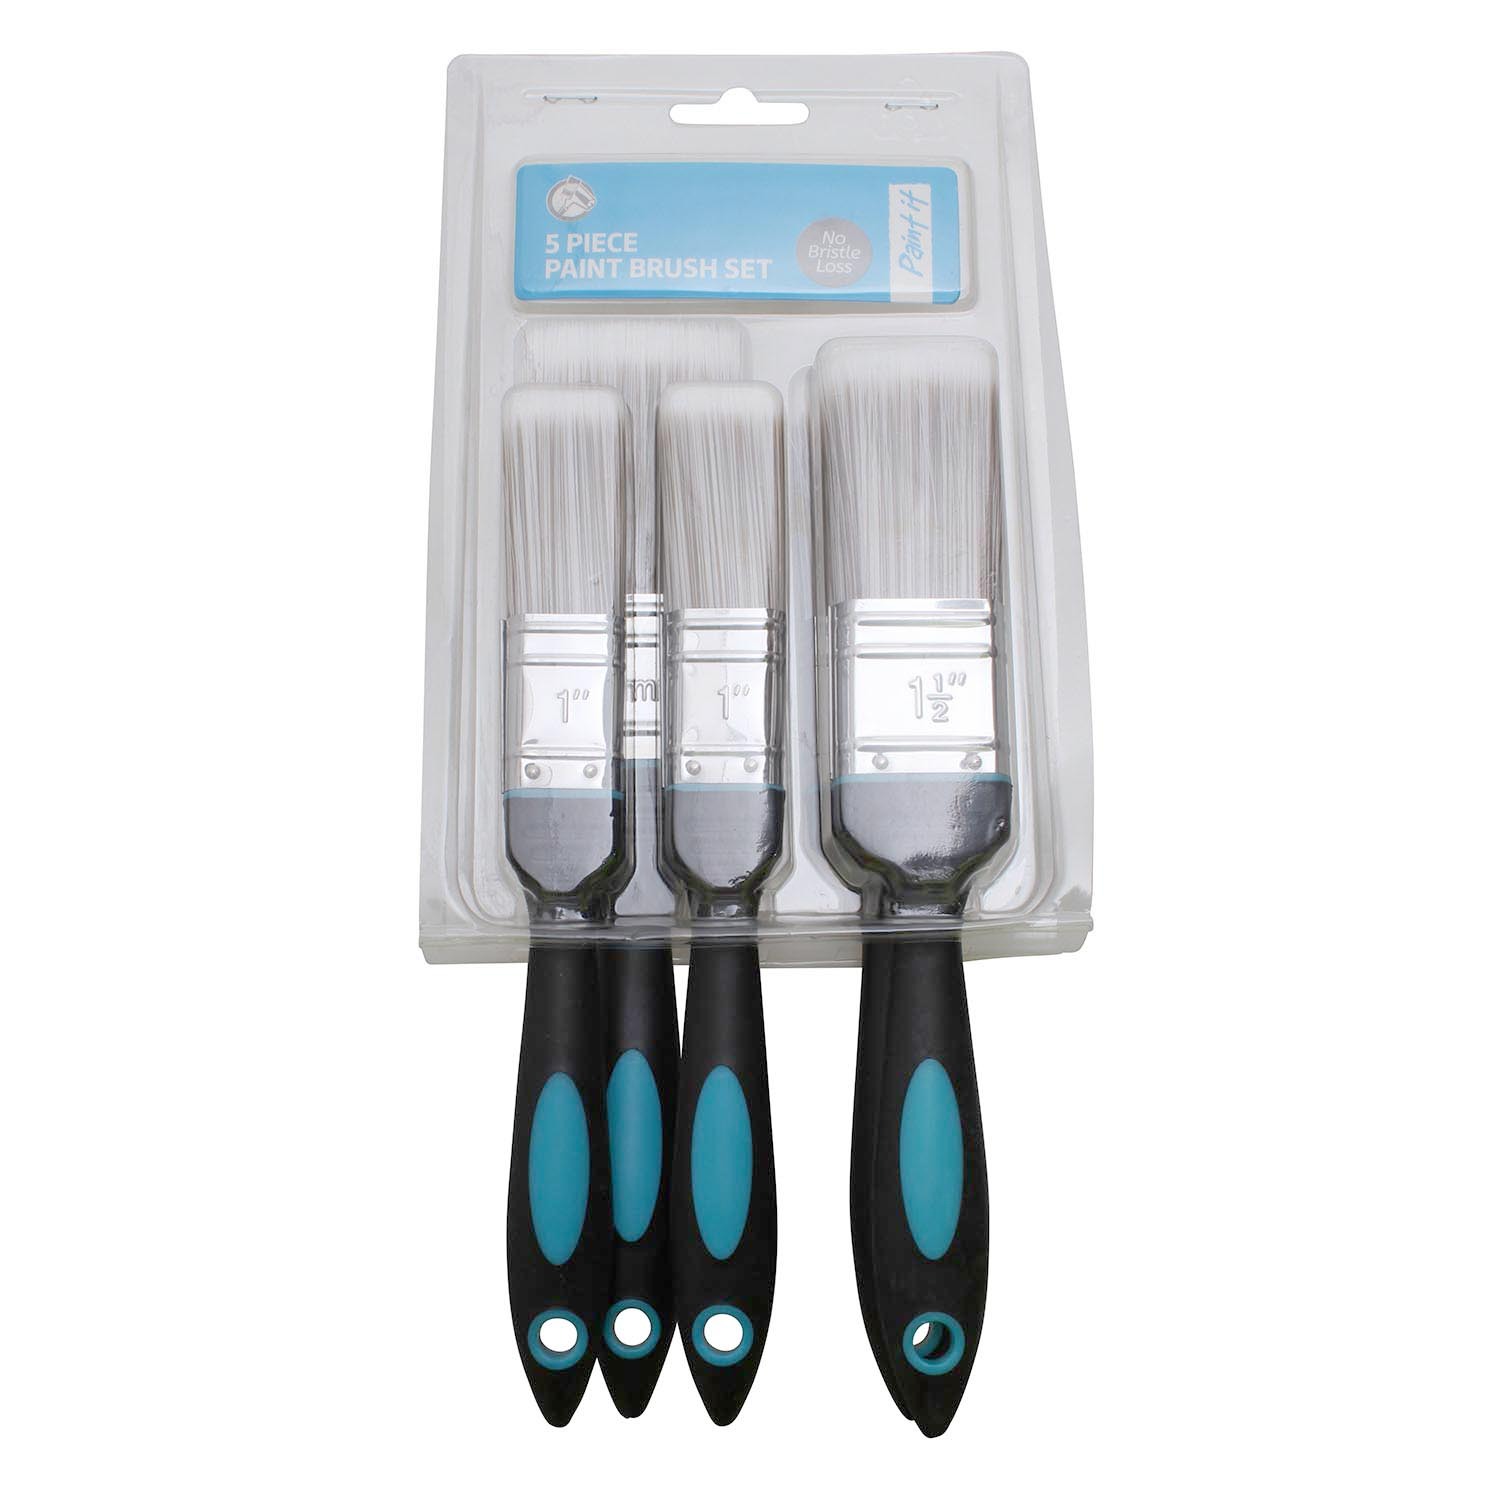 Prepare It 5 Pack No Bristle Loss Paint Brush Set Image